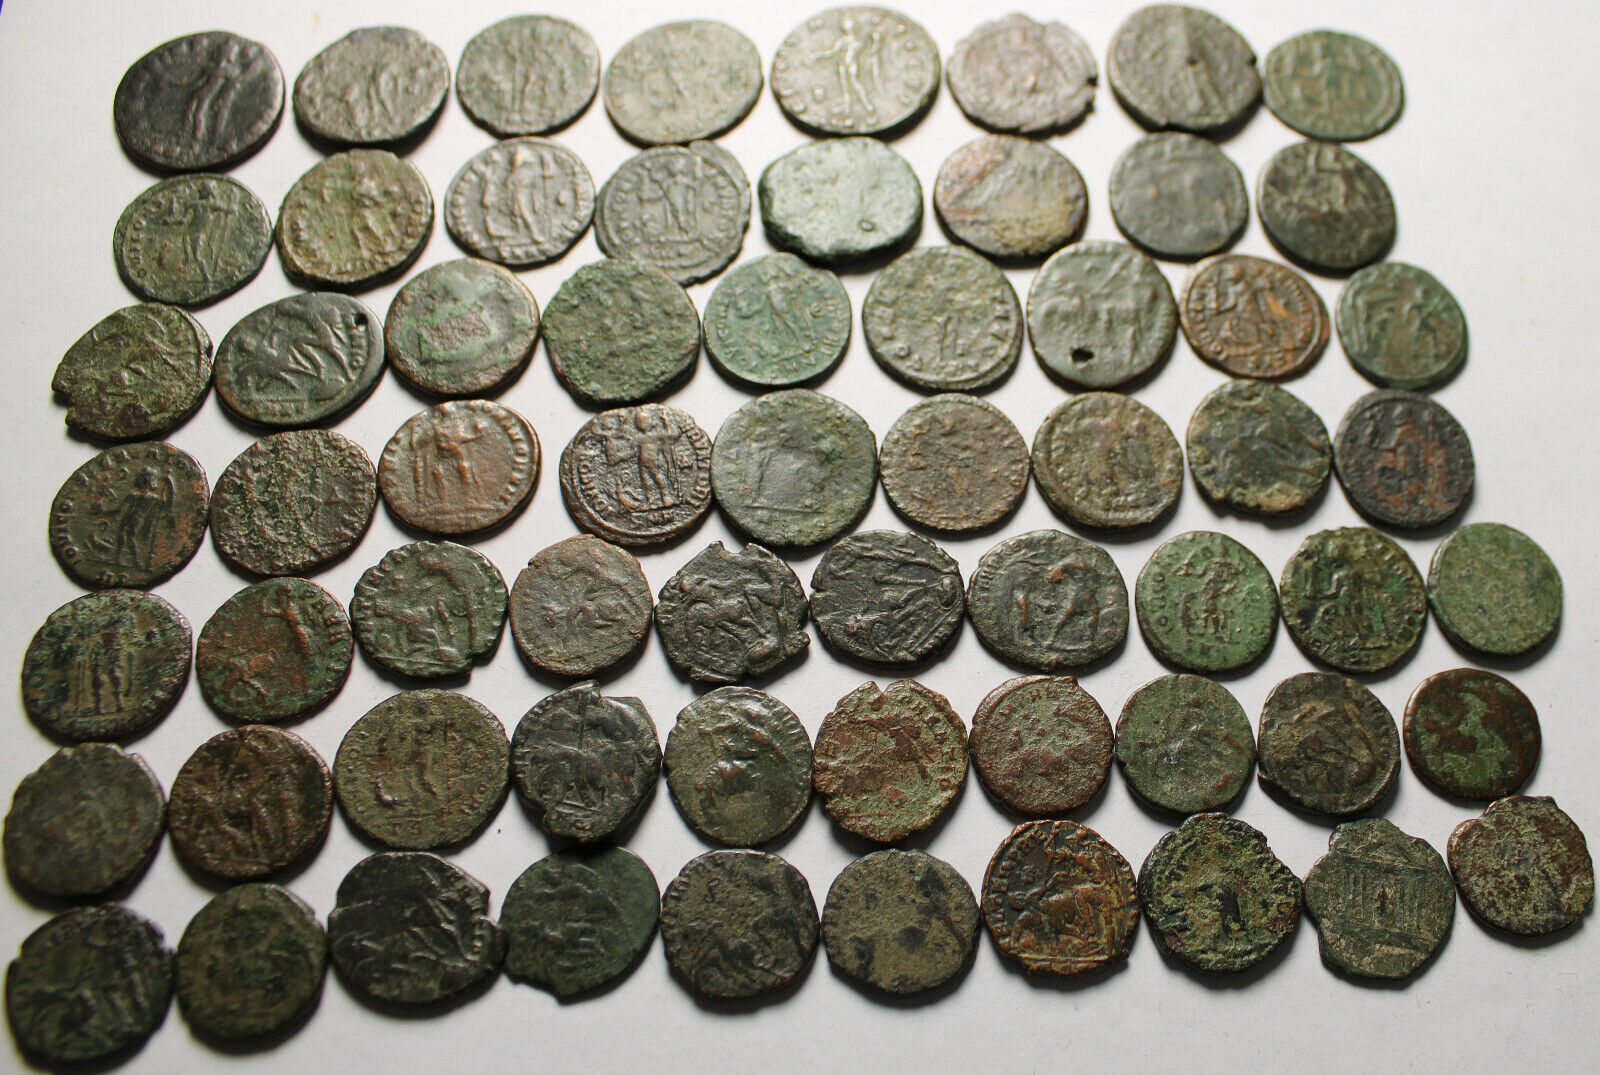 Lot of 3 large coins Rare original Ancient Roman Constantius Licinius Maximianus Без бренда - фотография #9